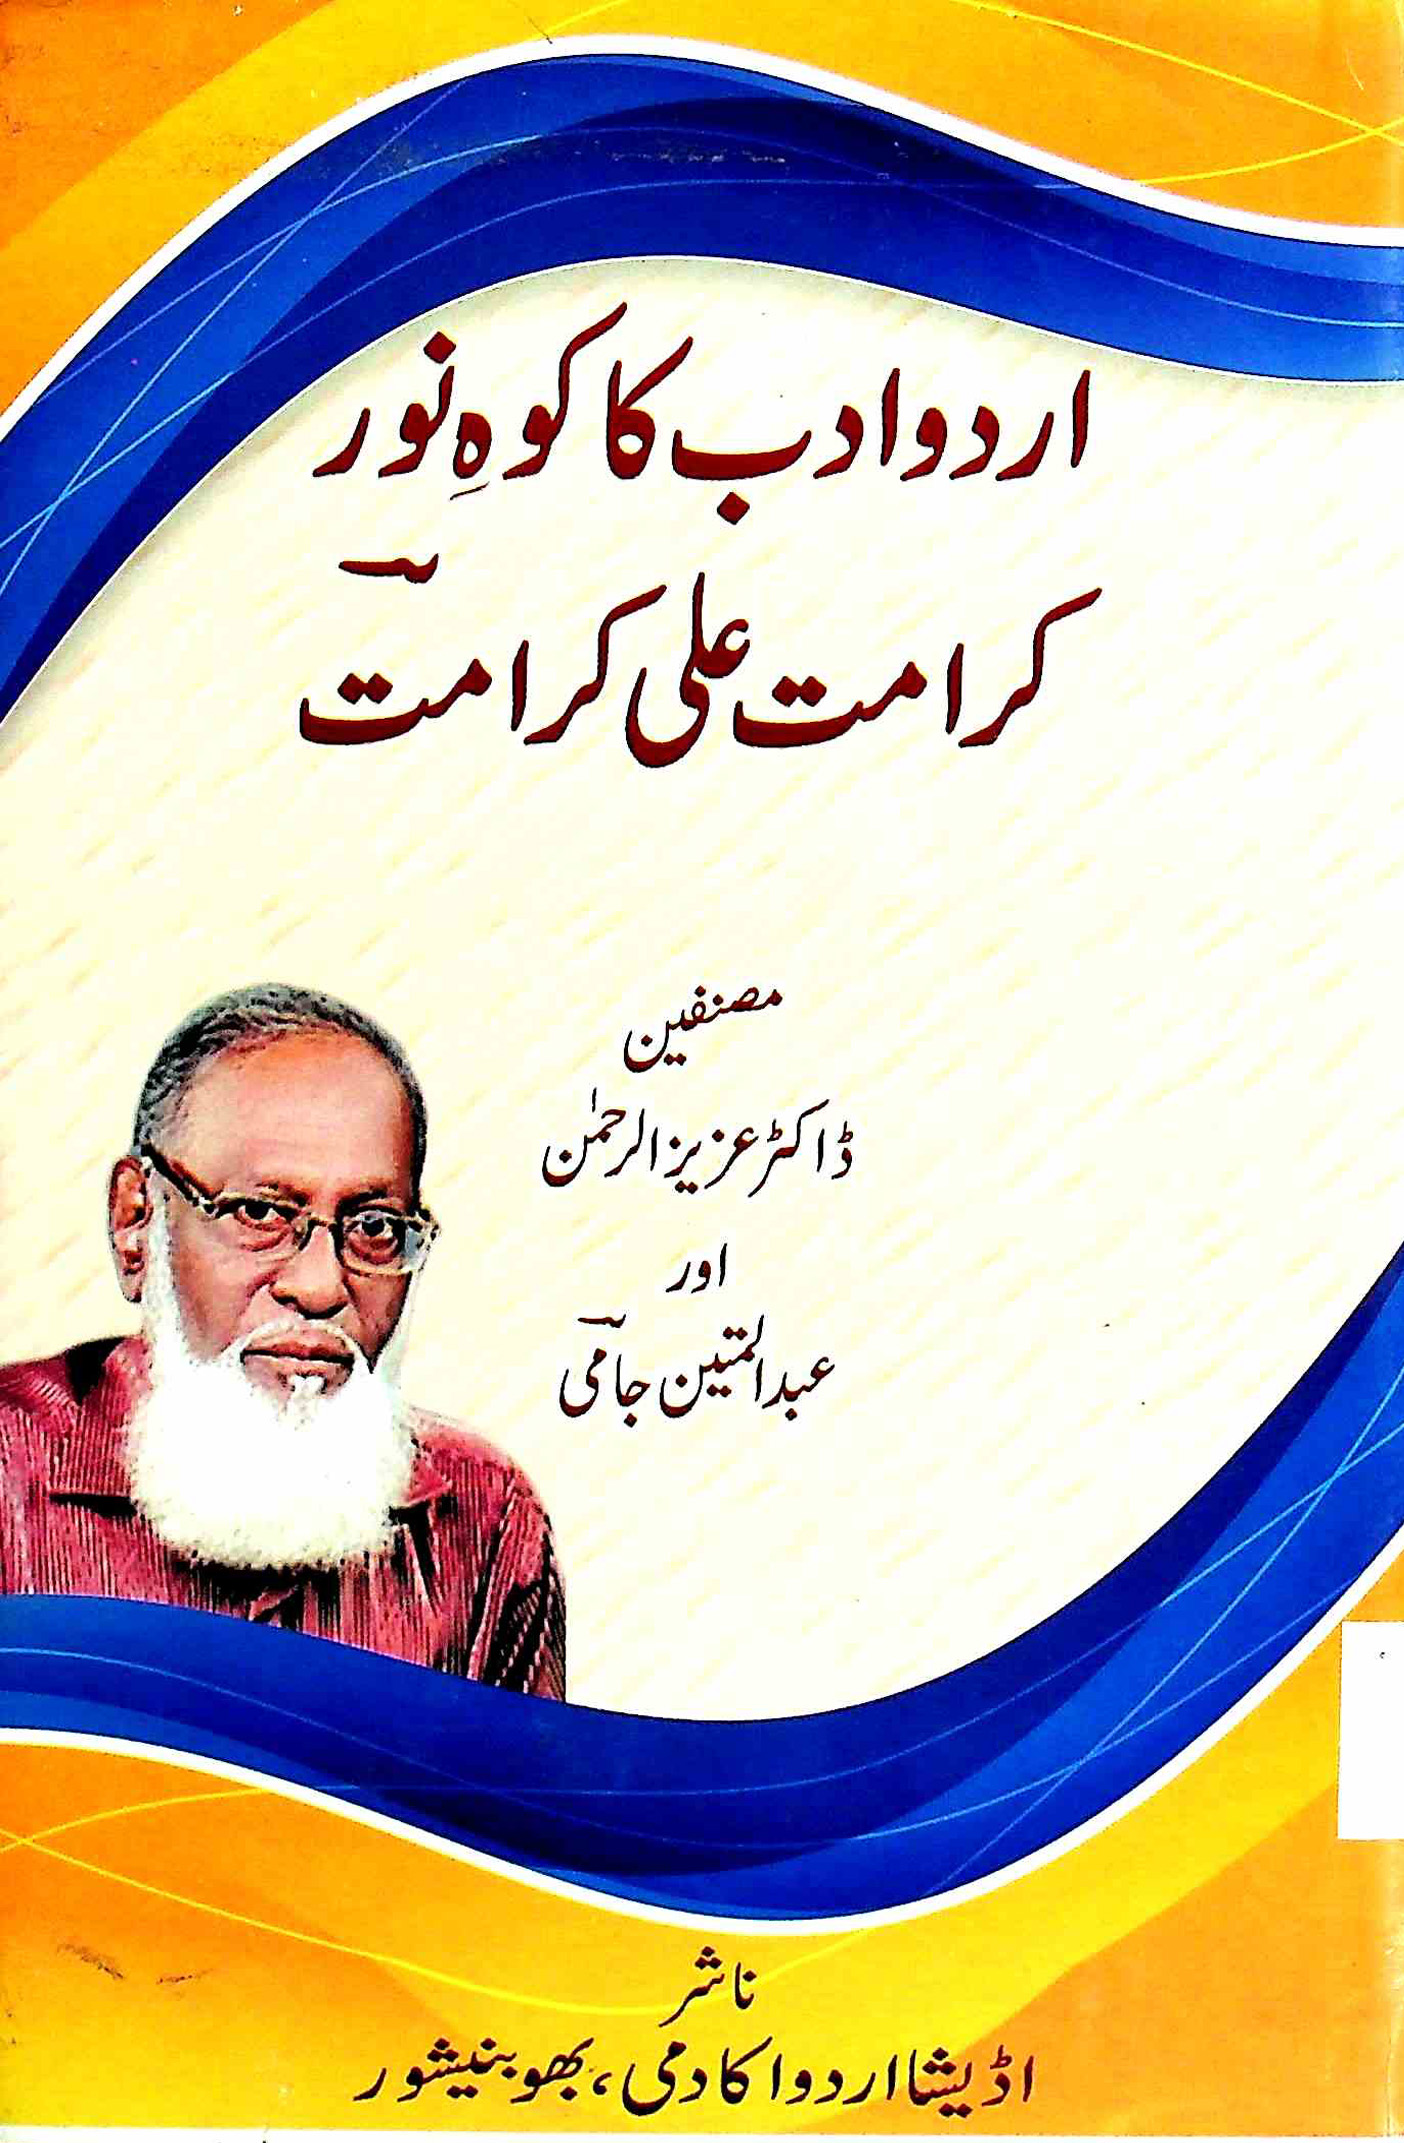 اردو ادب کا کوہ نور کرامت علی کرامت